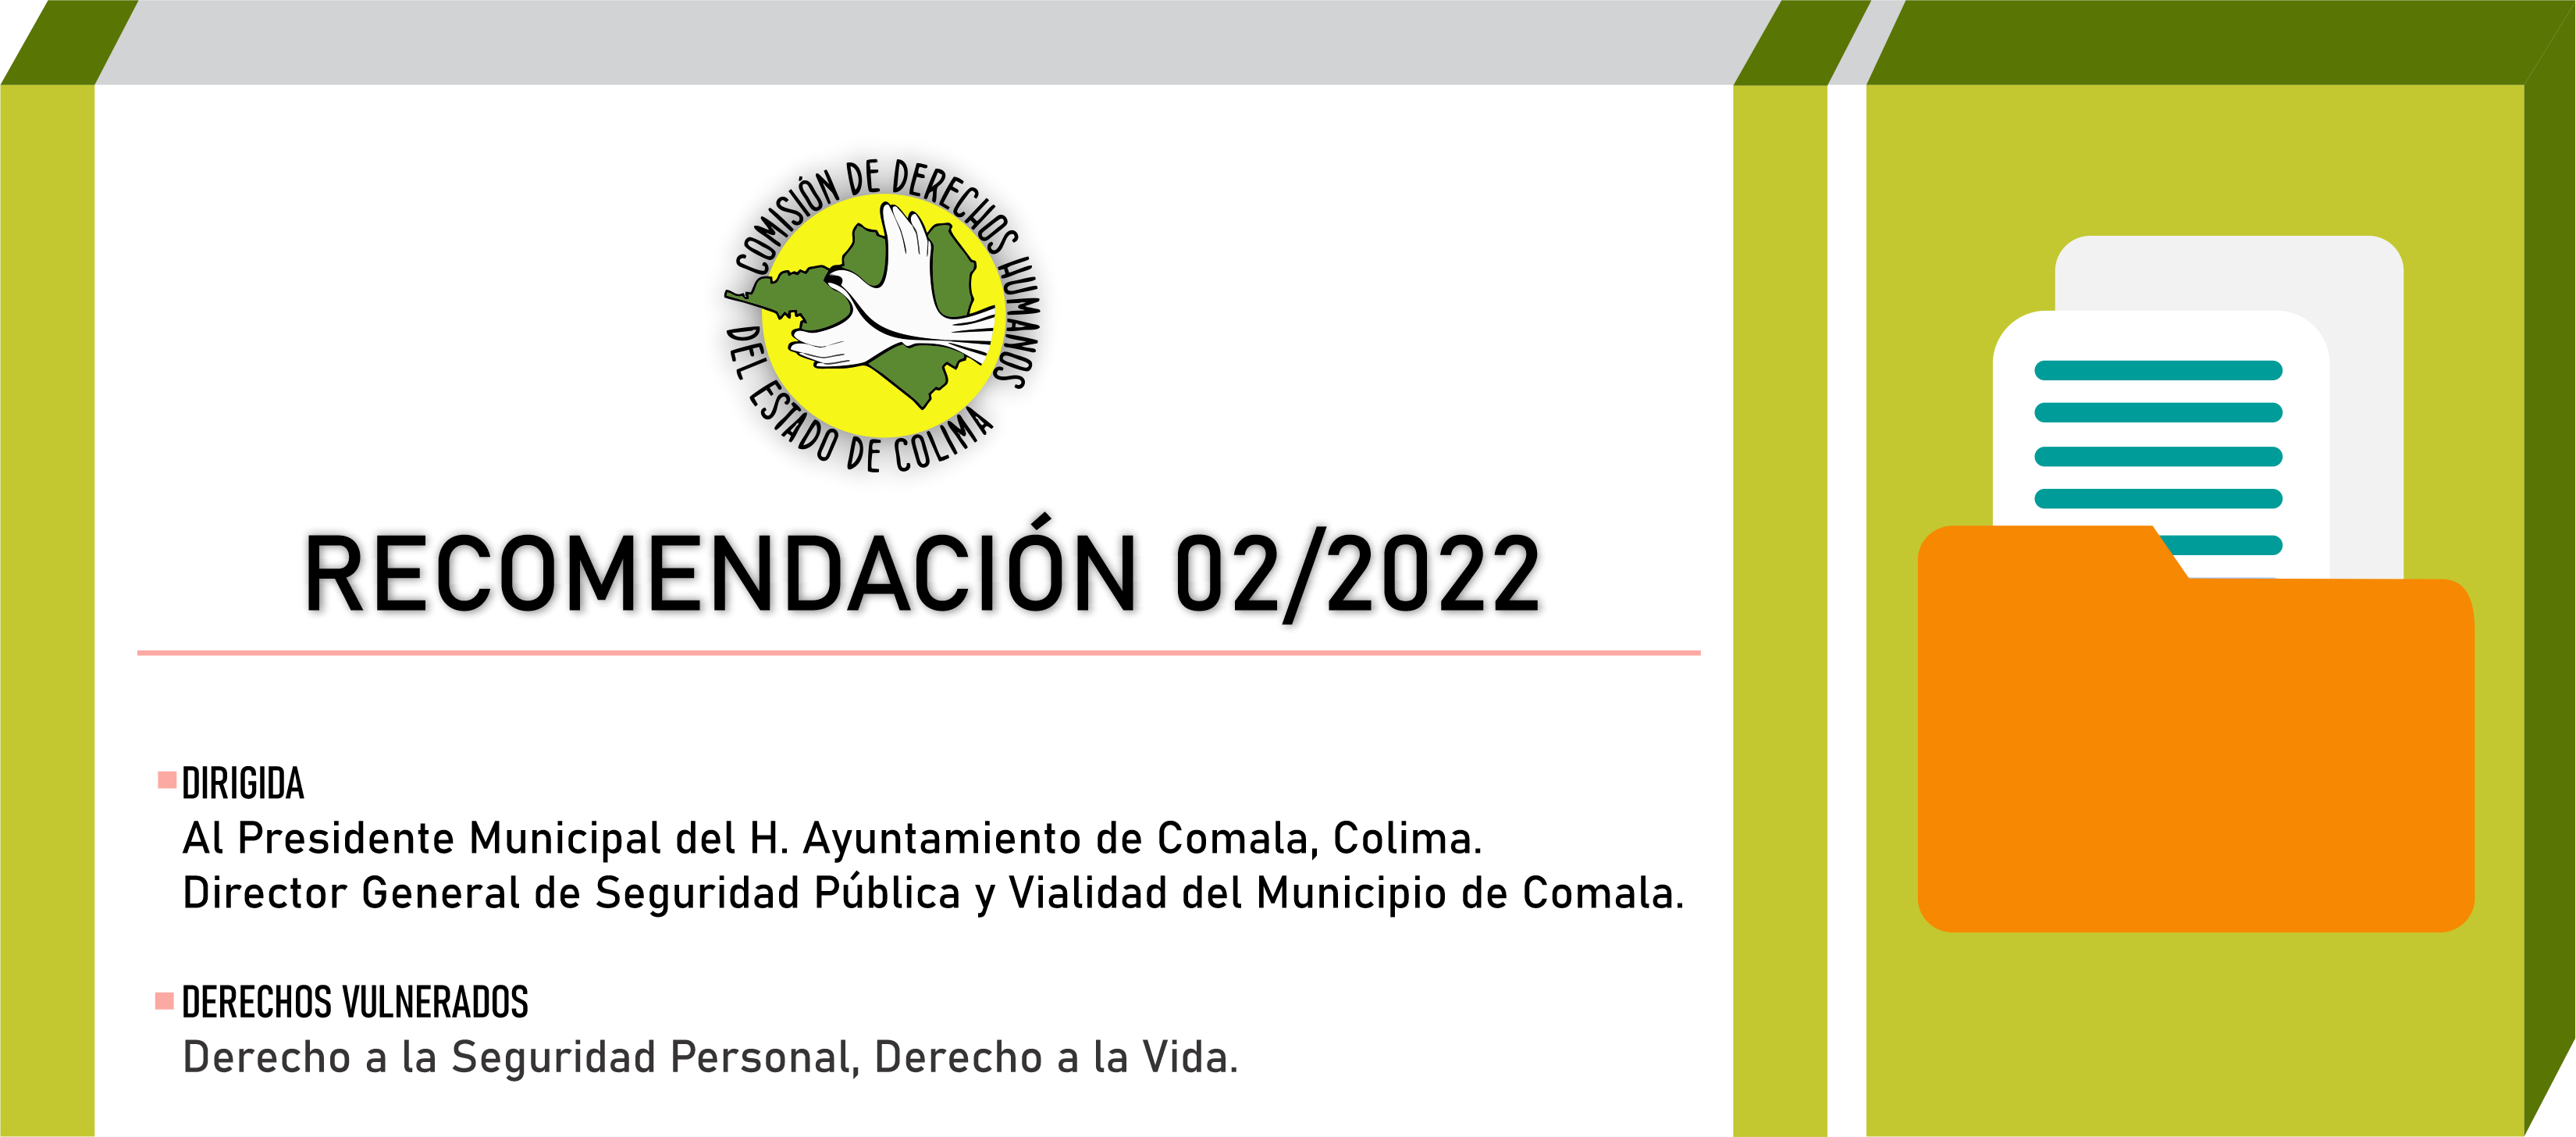 CDHEC emite Recomendación dirigida a autoridades del Ayuntamiento de Comala